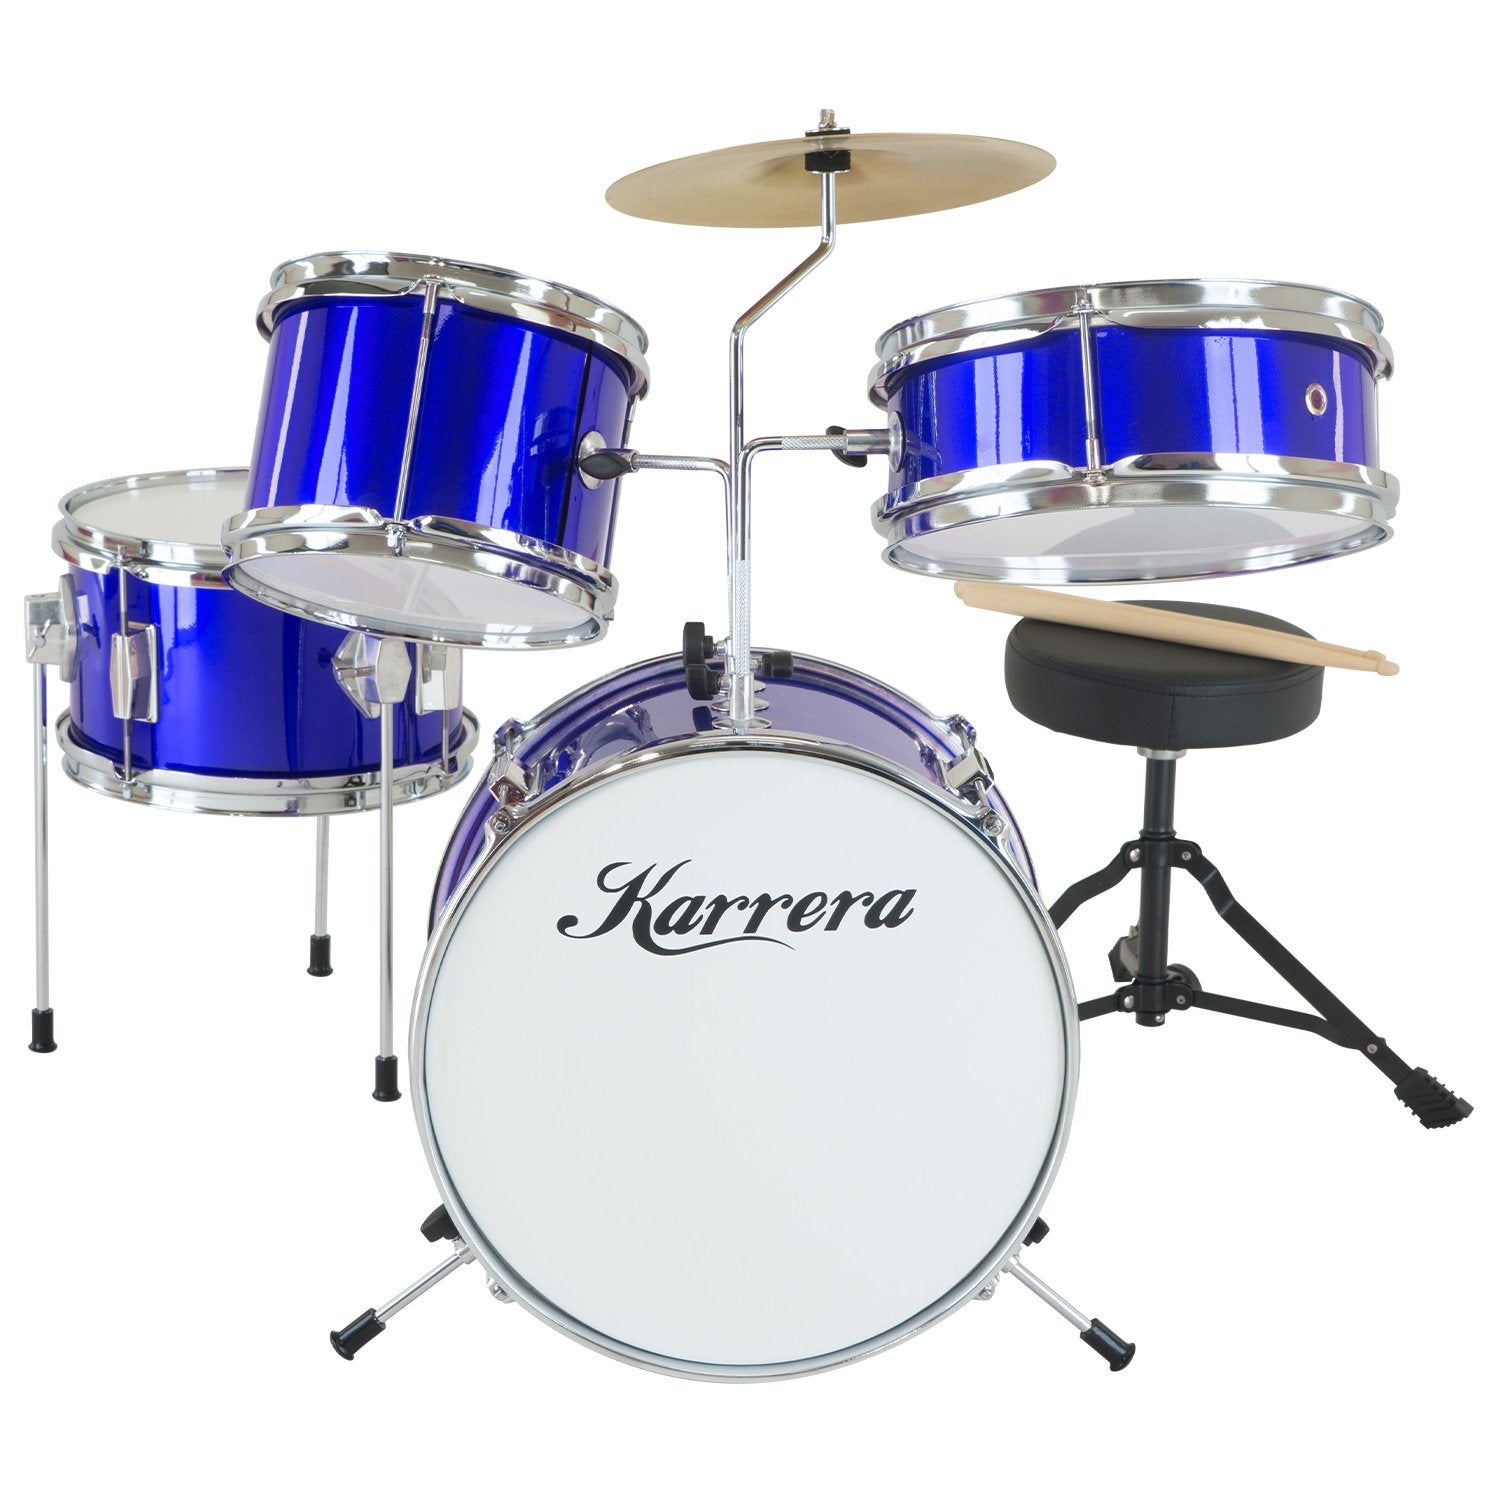 Karrera Childrens 4 Piece Drum Kit Set - Blue